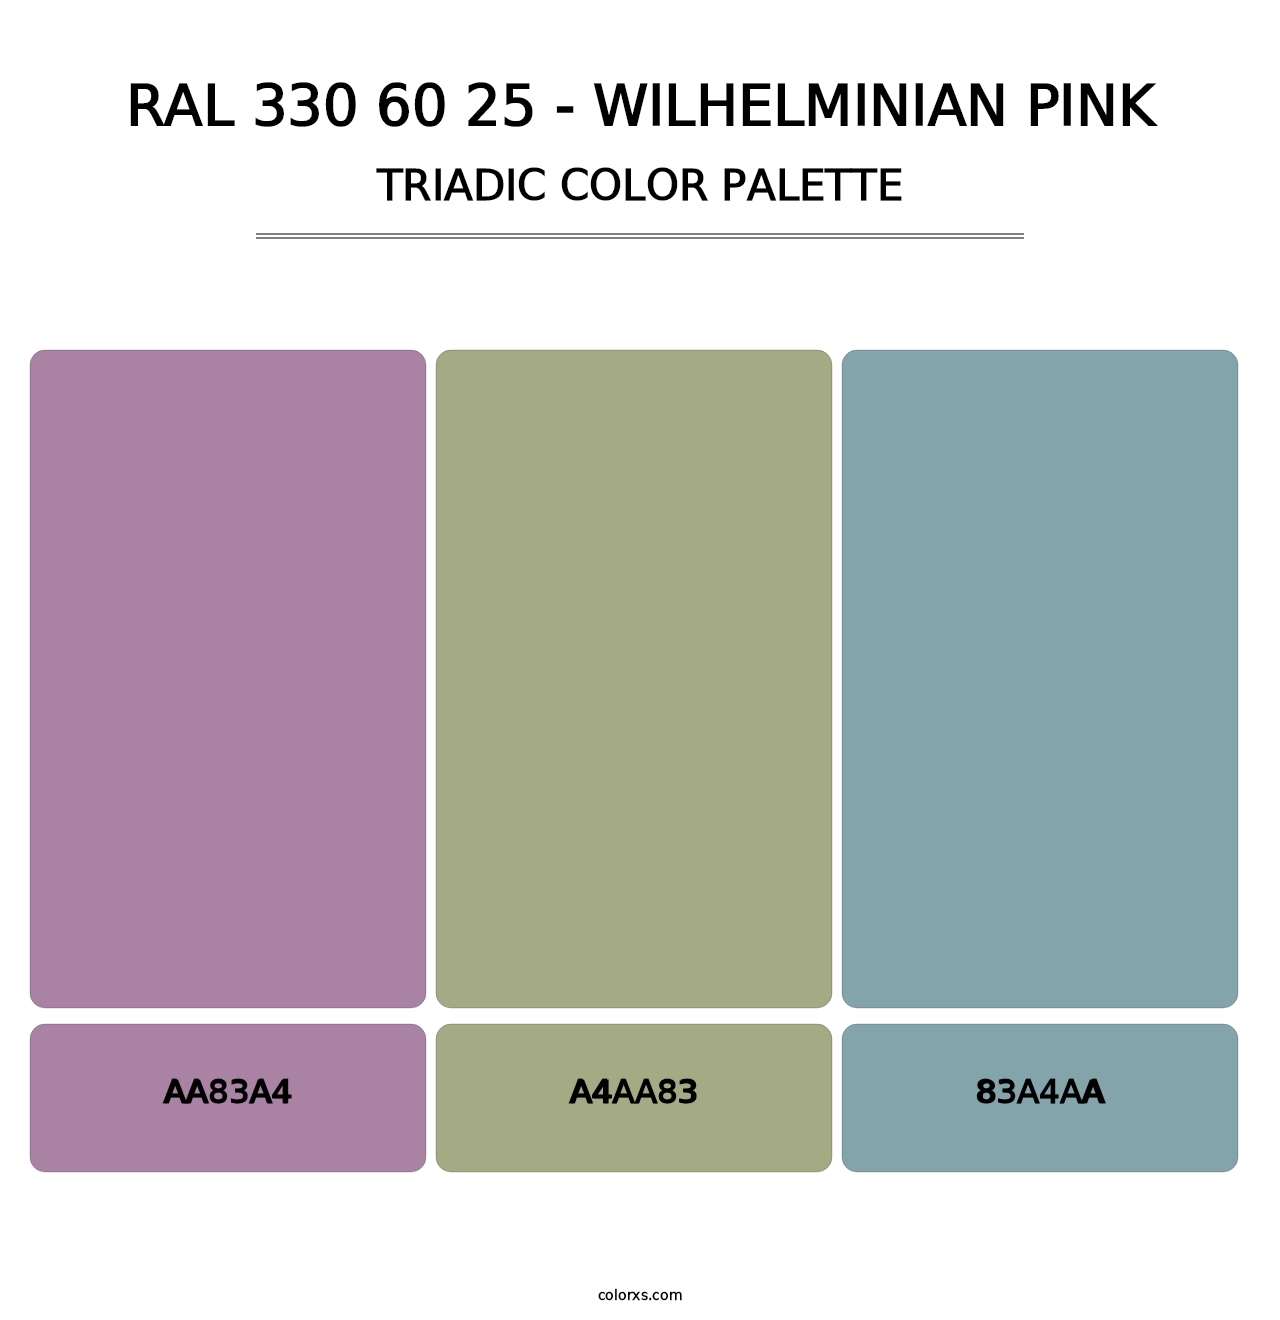 RAL 330 60 25 - Wilhelminian Pink - Triadic Color Palette